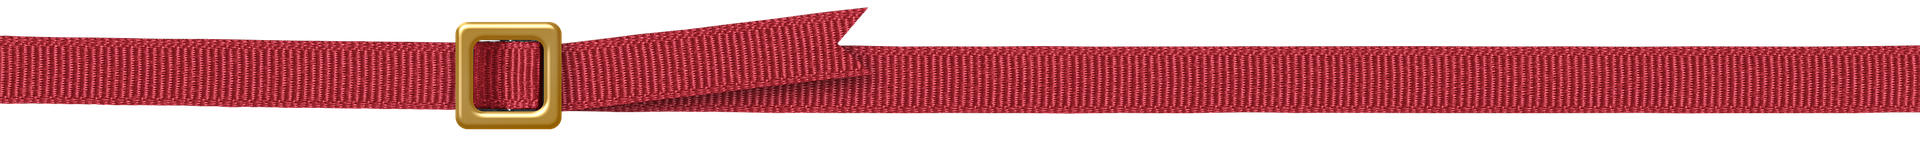 belt-line-separator-red